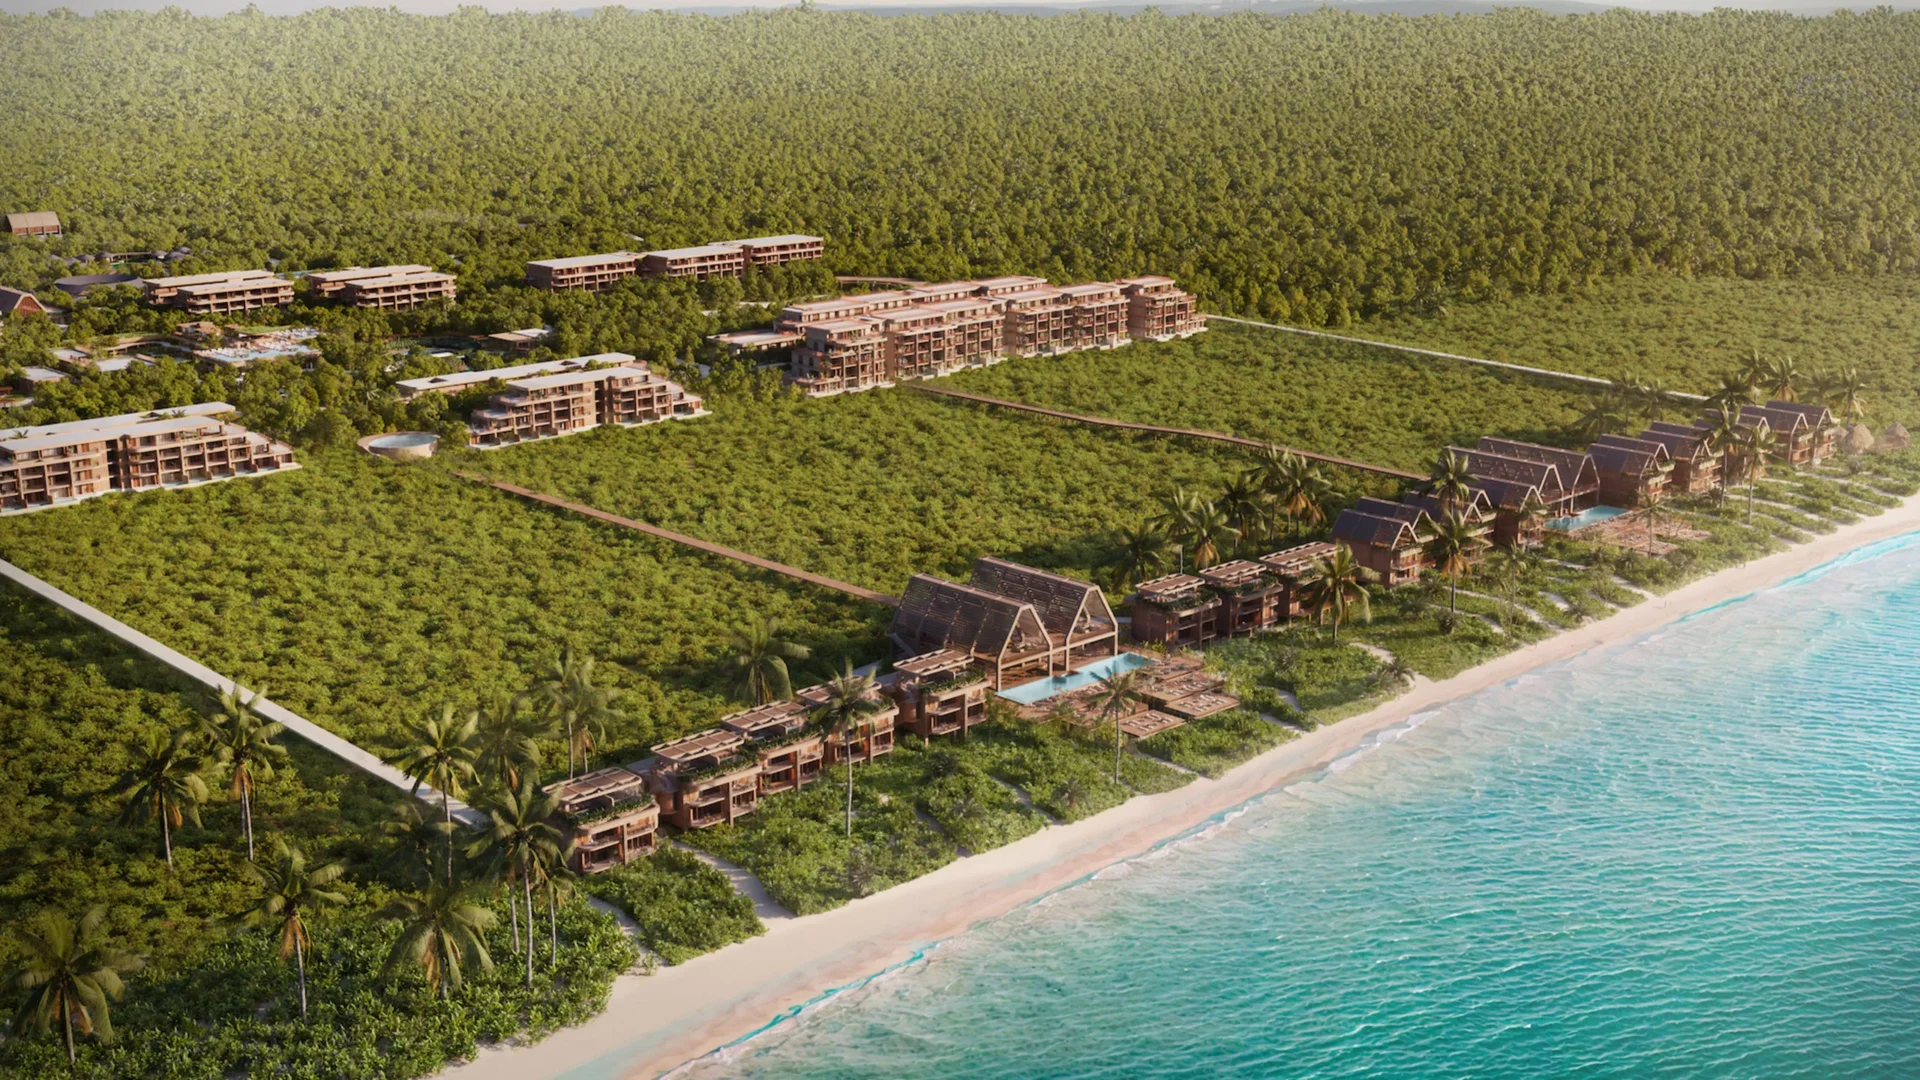 Le groupe hôtelier The Ritz-Carlton arrive à la Riviera Maya